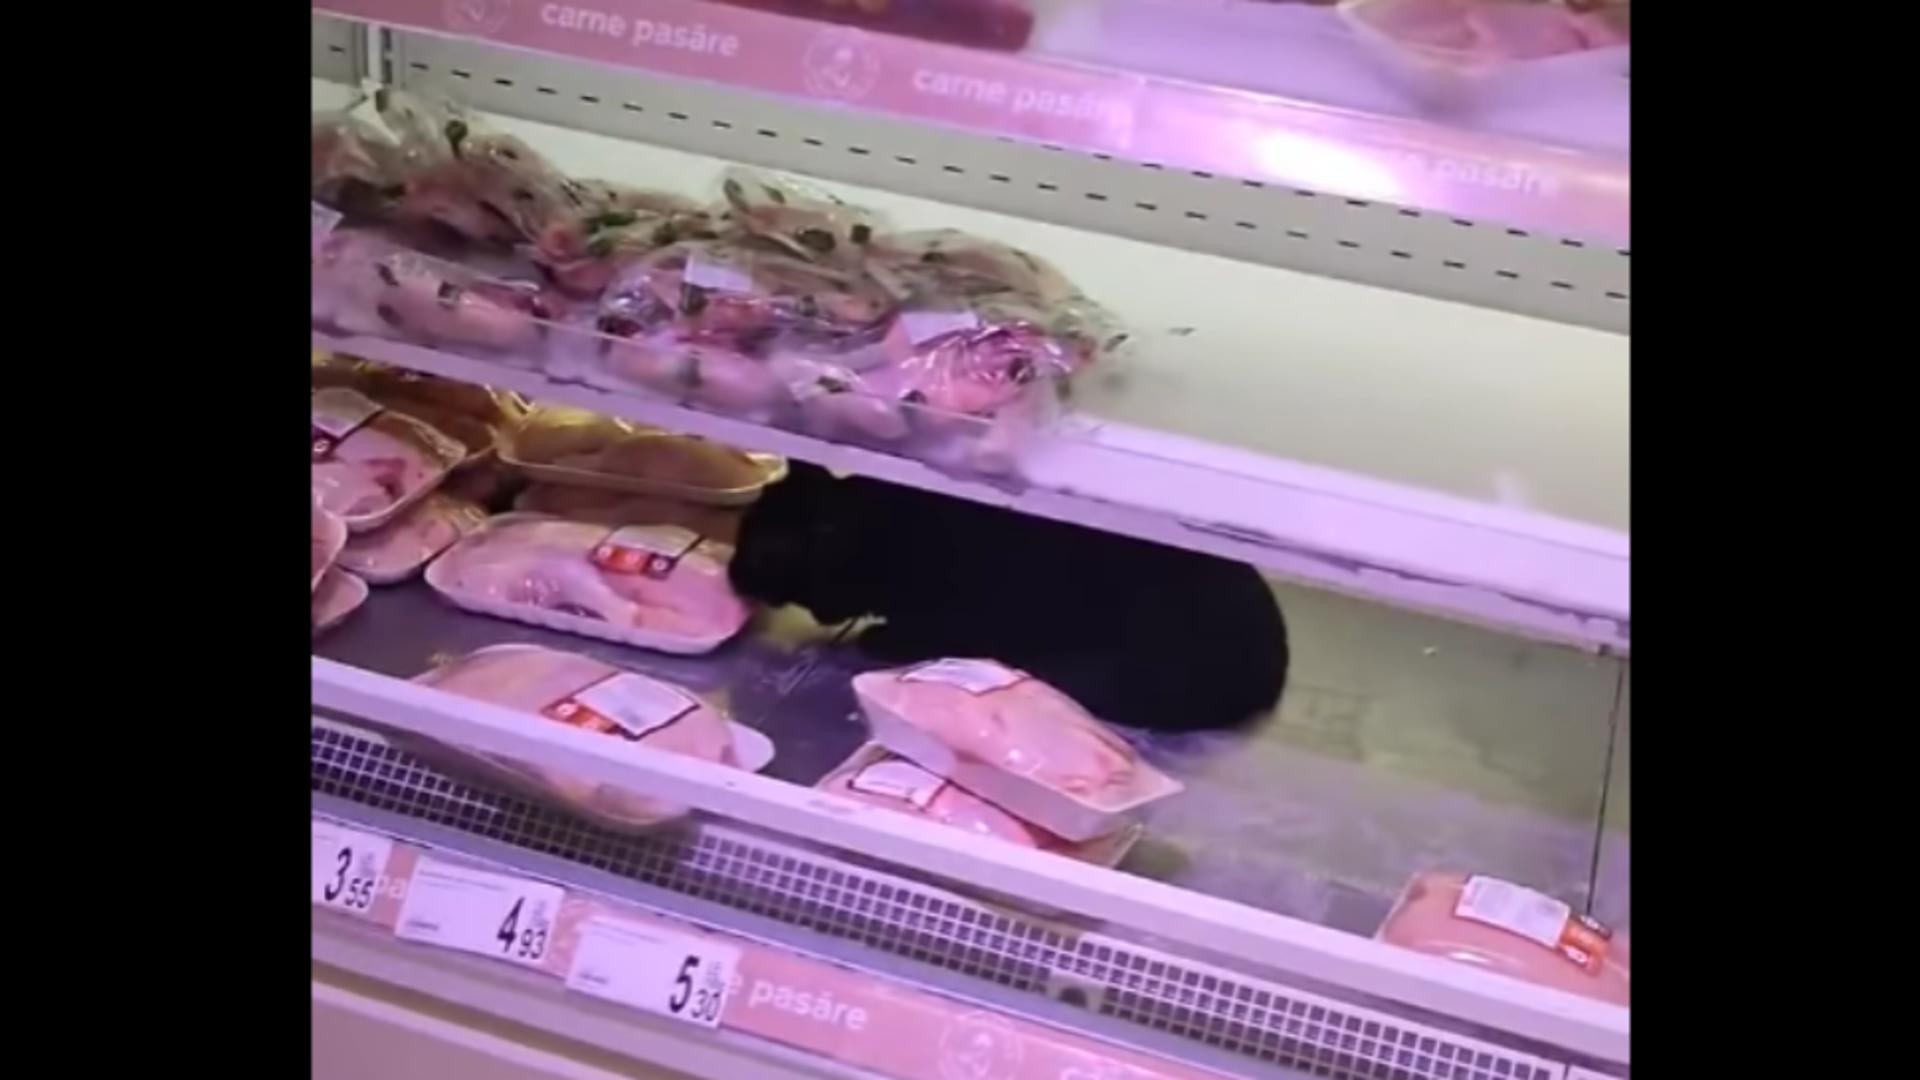 Incredibil: O pisică se delectează dintr-o caserolă cu carne, direct pe raftul unui magazin din București! VIDEO